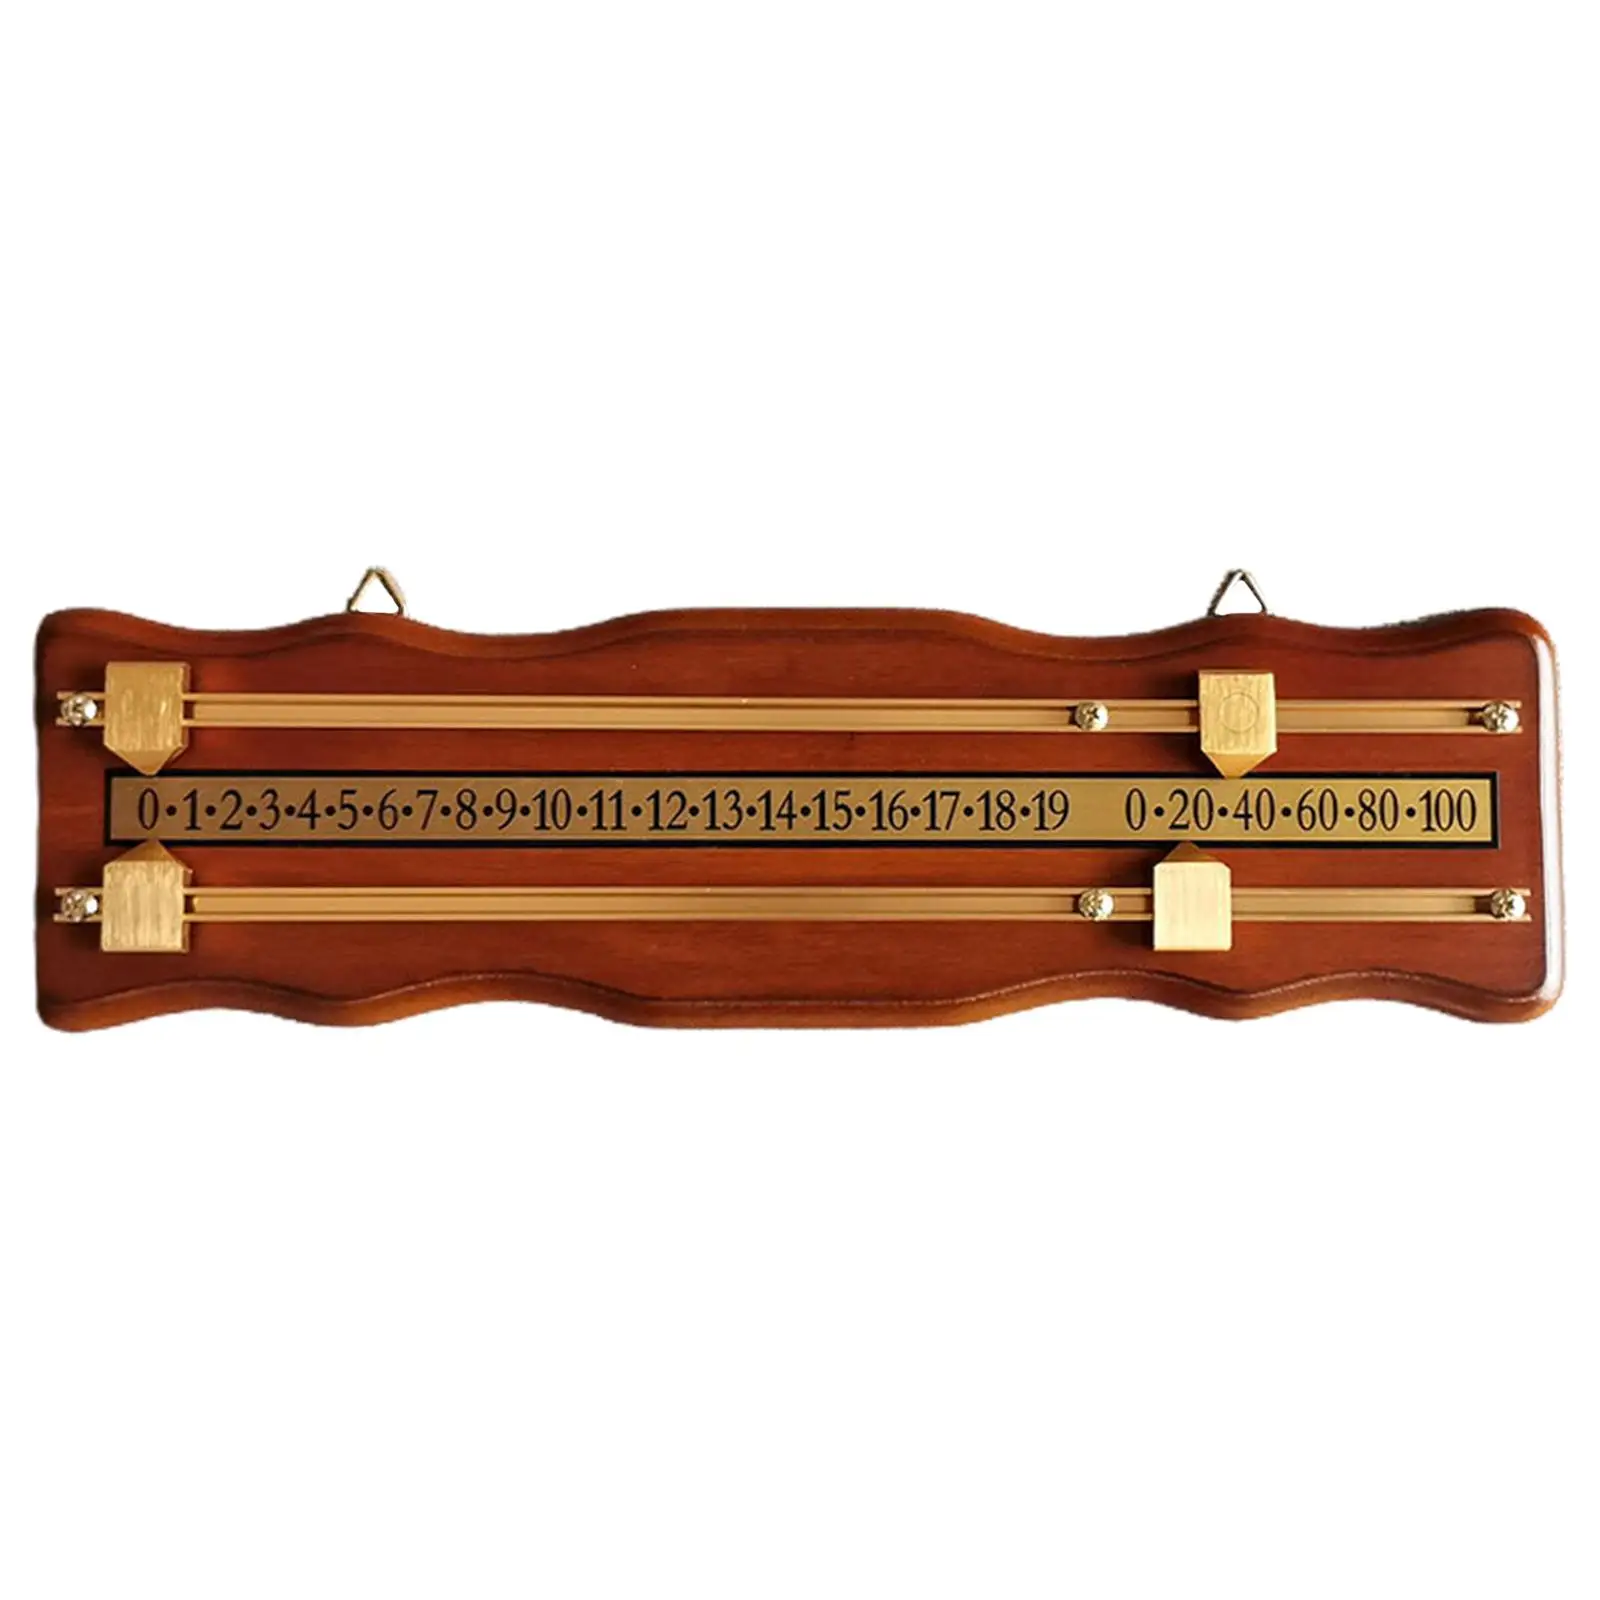 Wood Billiard Score Board Billiard Score Keeper Scoring Device Shuffleboard Wall